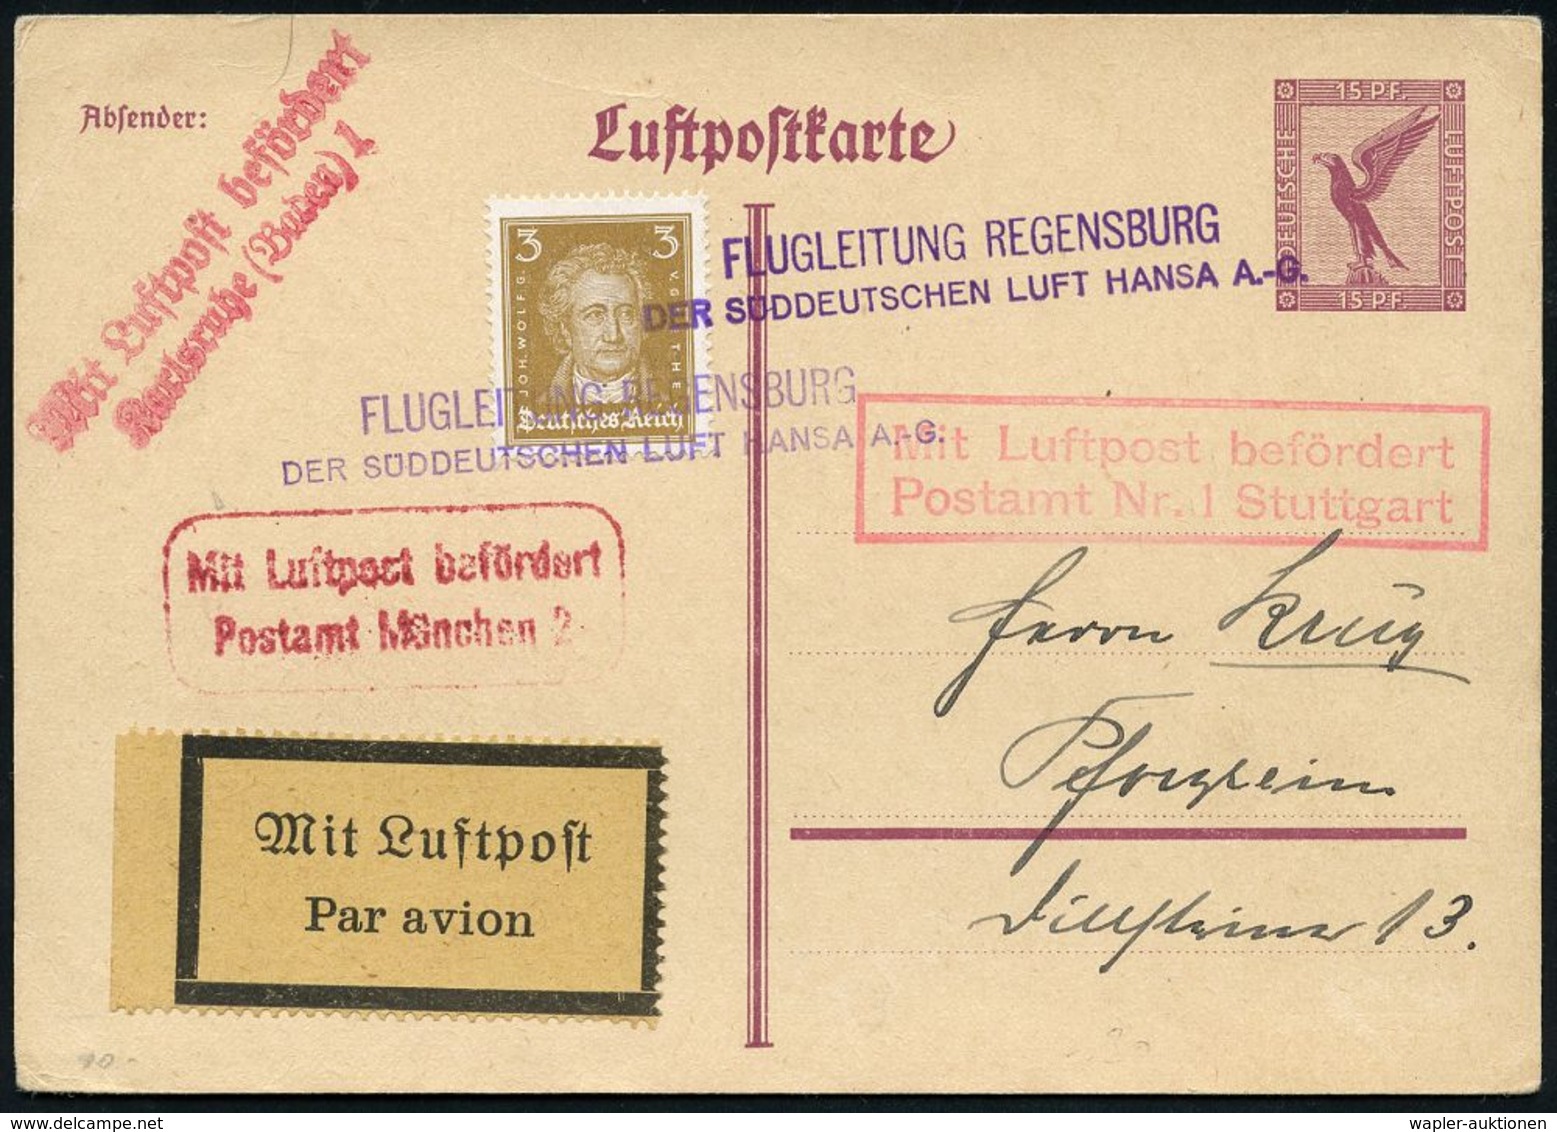 FLUGHAFEN / FLUGHAFEN-POSTÄMTER : Regensburg 1926 (ca.) Viol. 2L: FLUGLEITUNG REGENSBURG/ DER SÜDDEUTSCHEN LUFT HANSA A. - Other (Air)